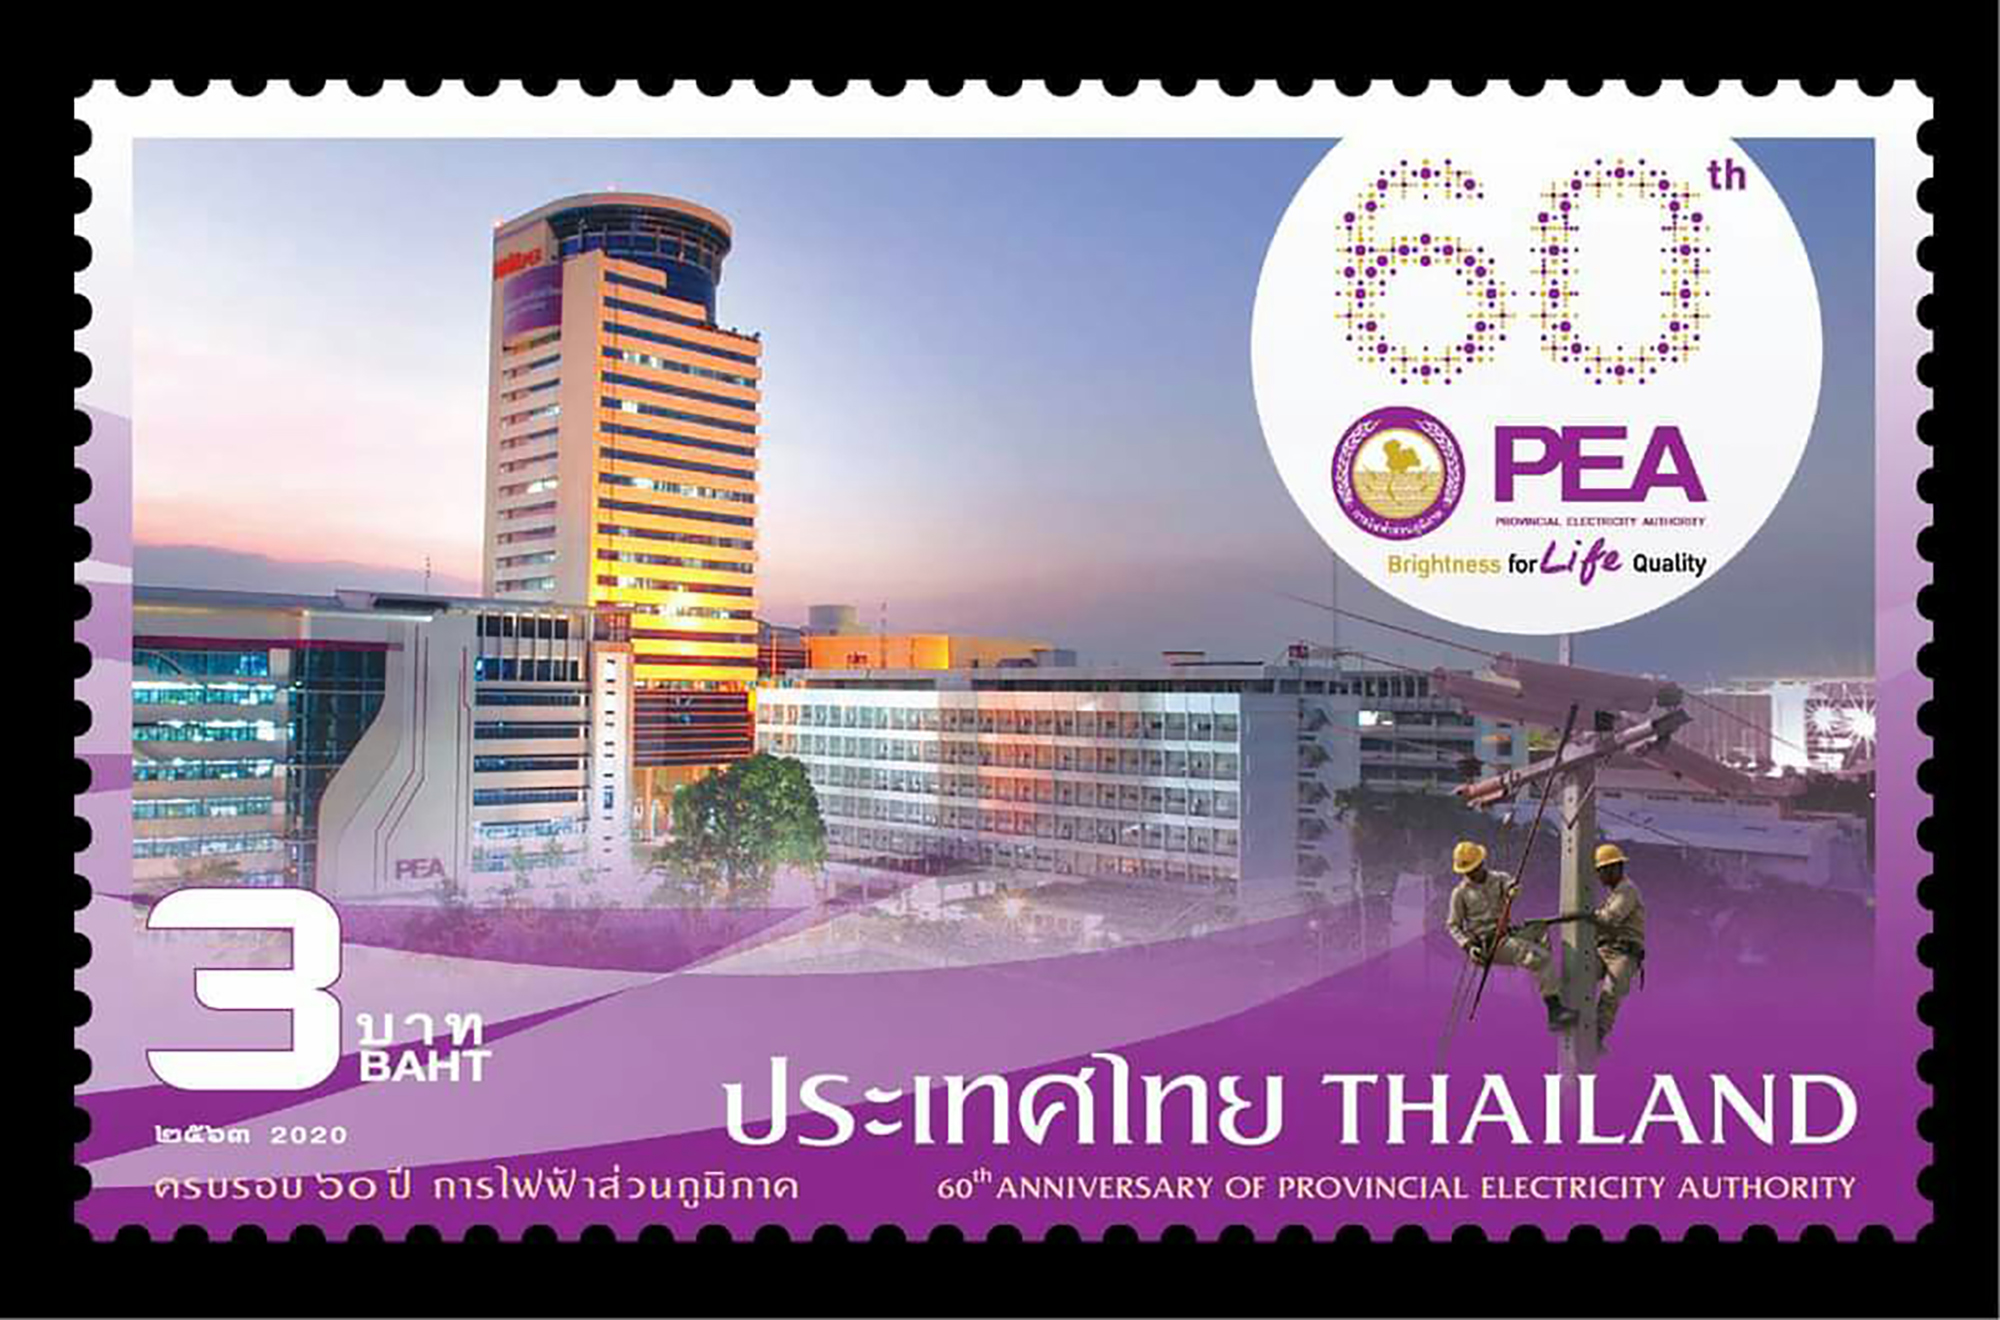 ไปรษณีย์ไทยเปิดตัวแสตมป์ 60 ปี การไฟฟ้าส่วนภูมิภาค